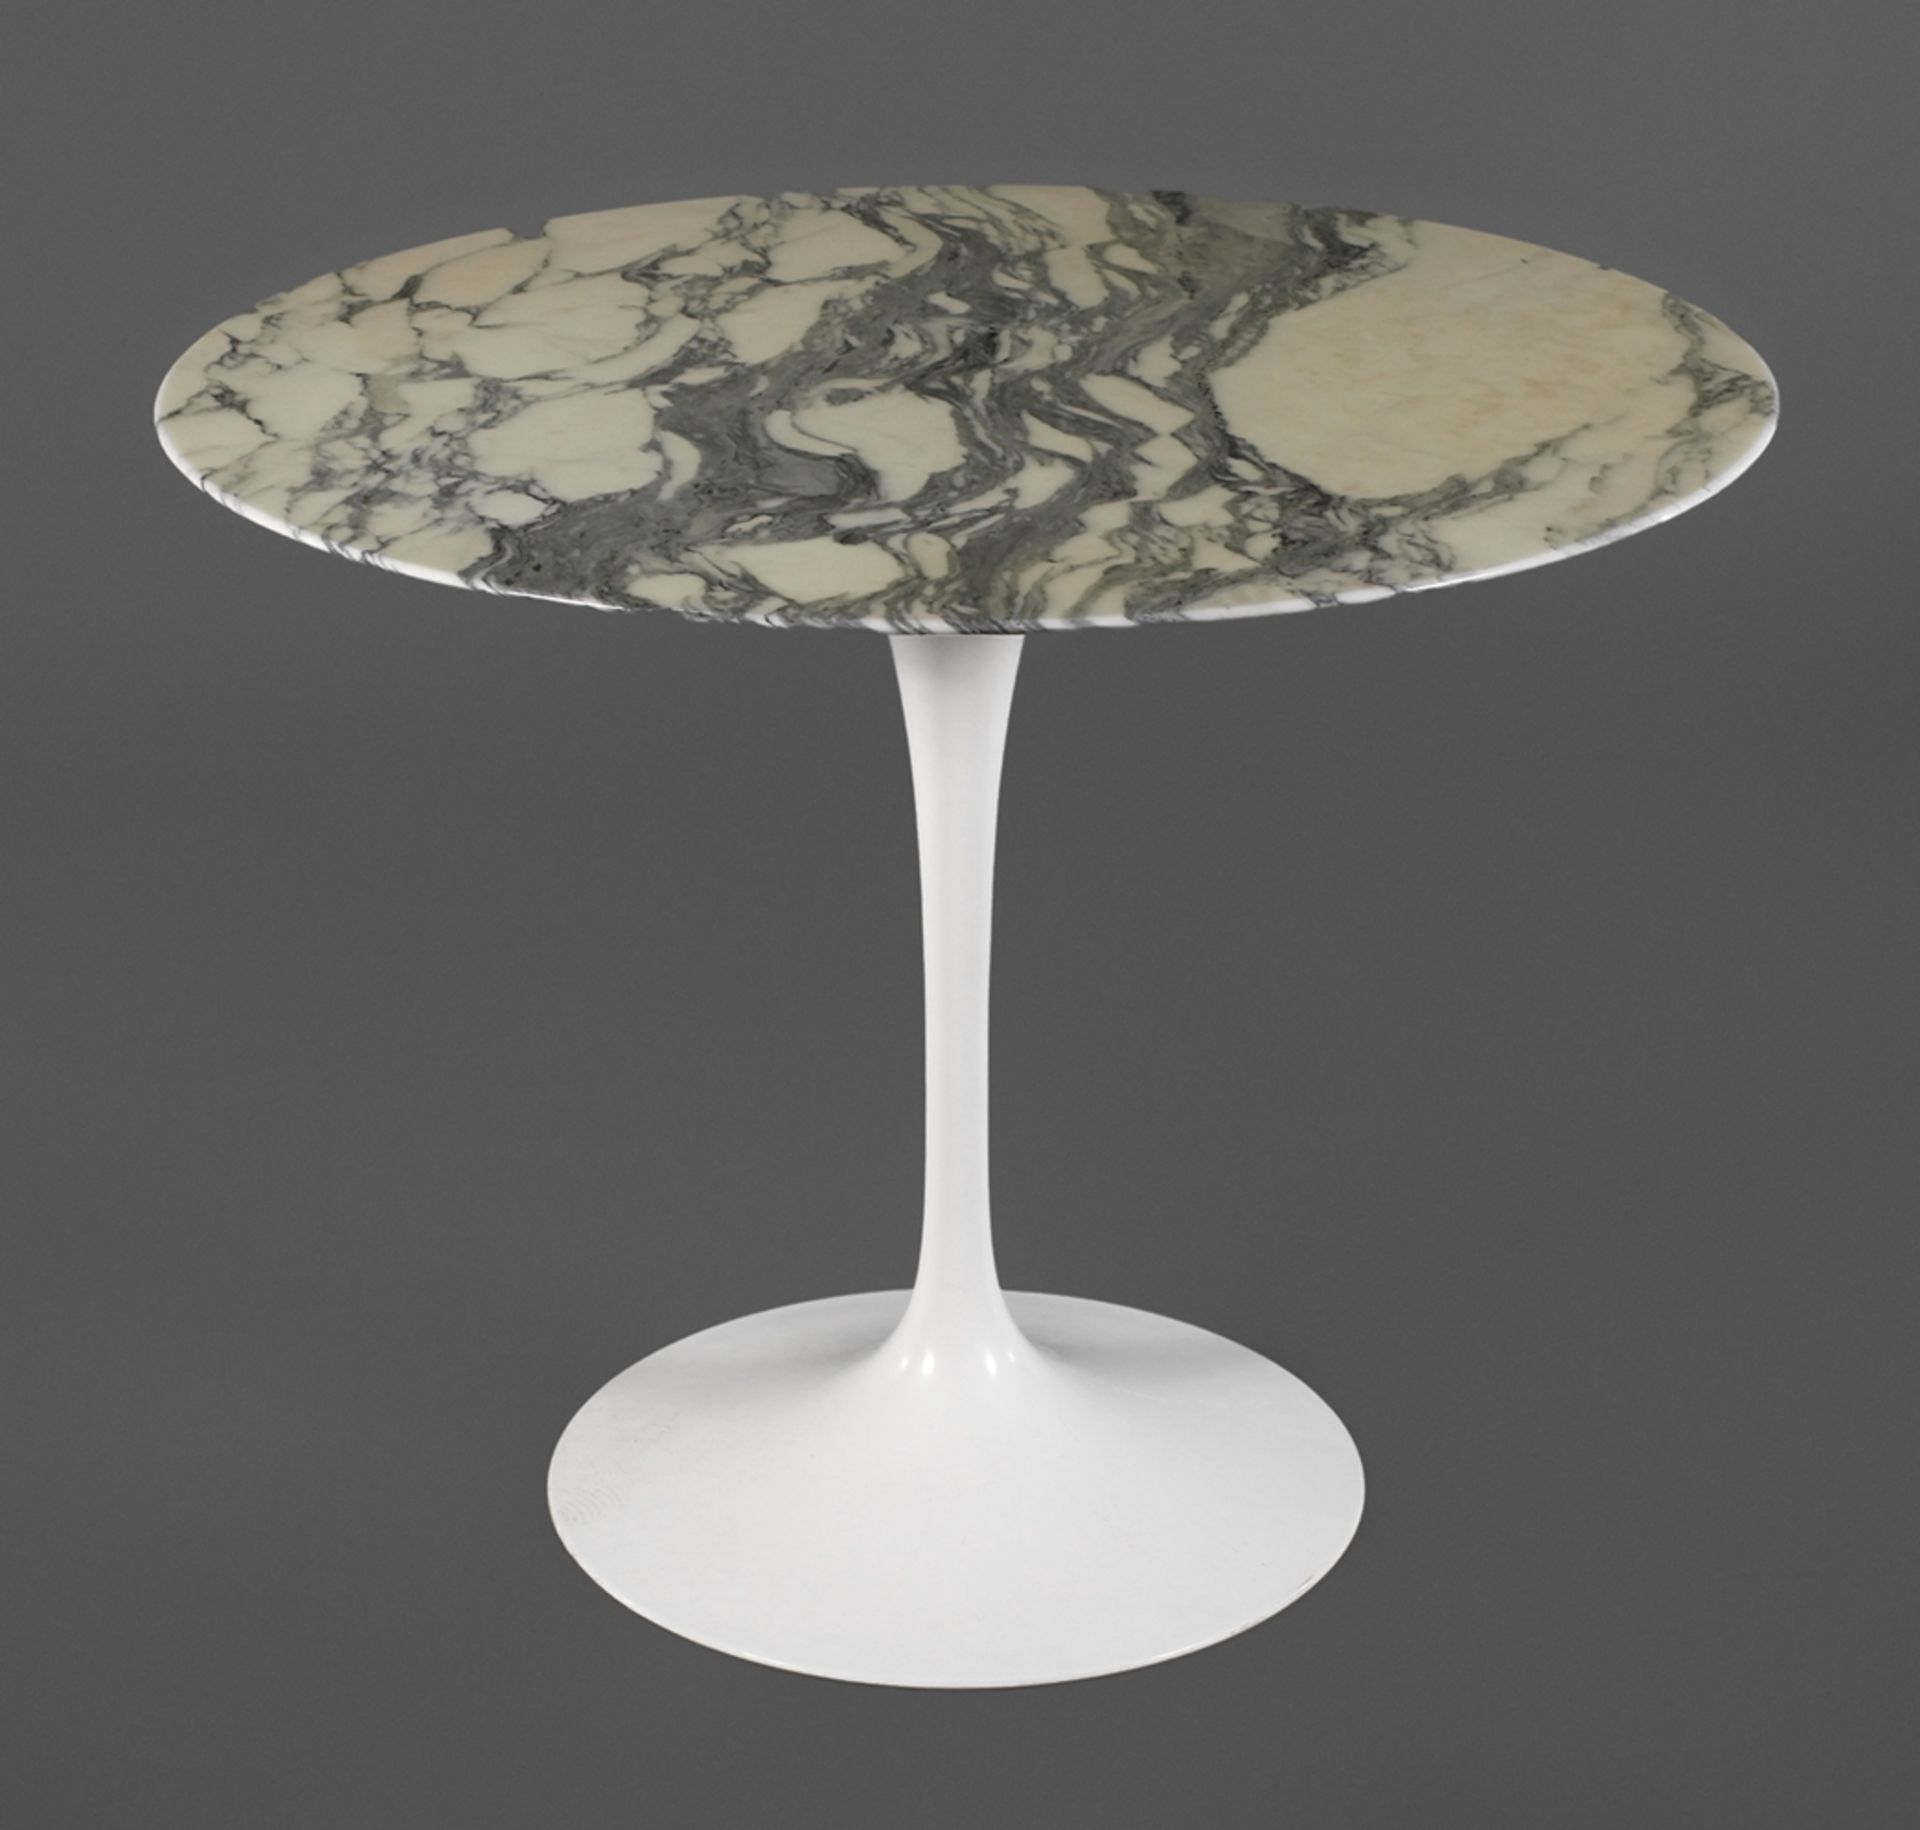 Tisch aus der TulipserieEntwurf Eero Saarinen für Knoll Inc. 1958, Ausführung Knoll International,